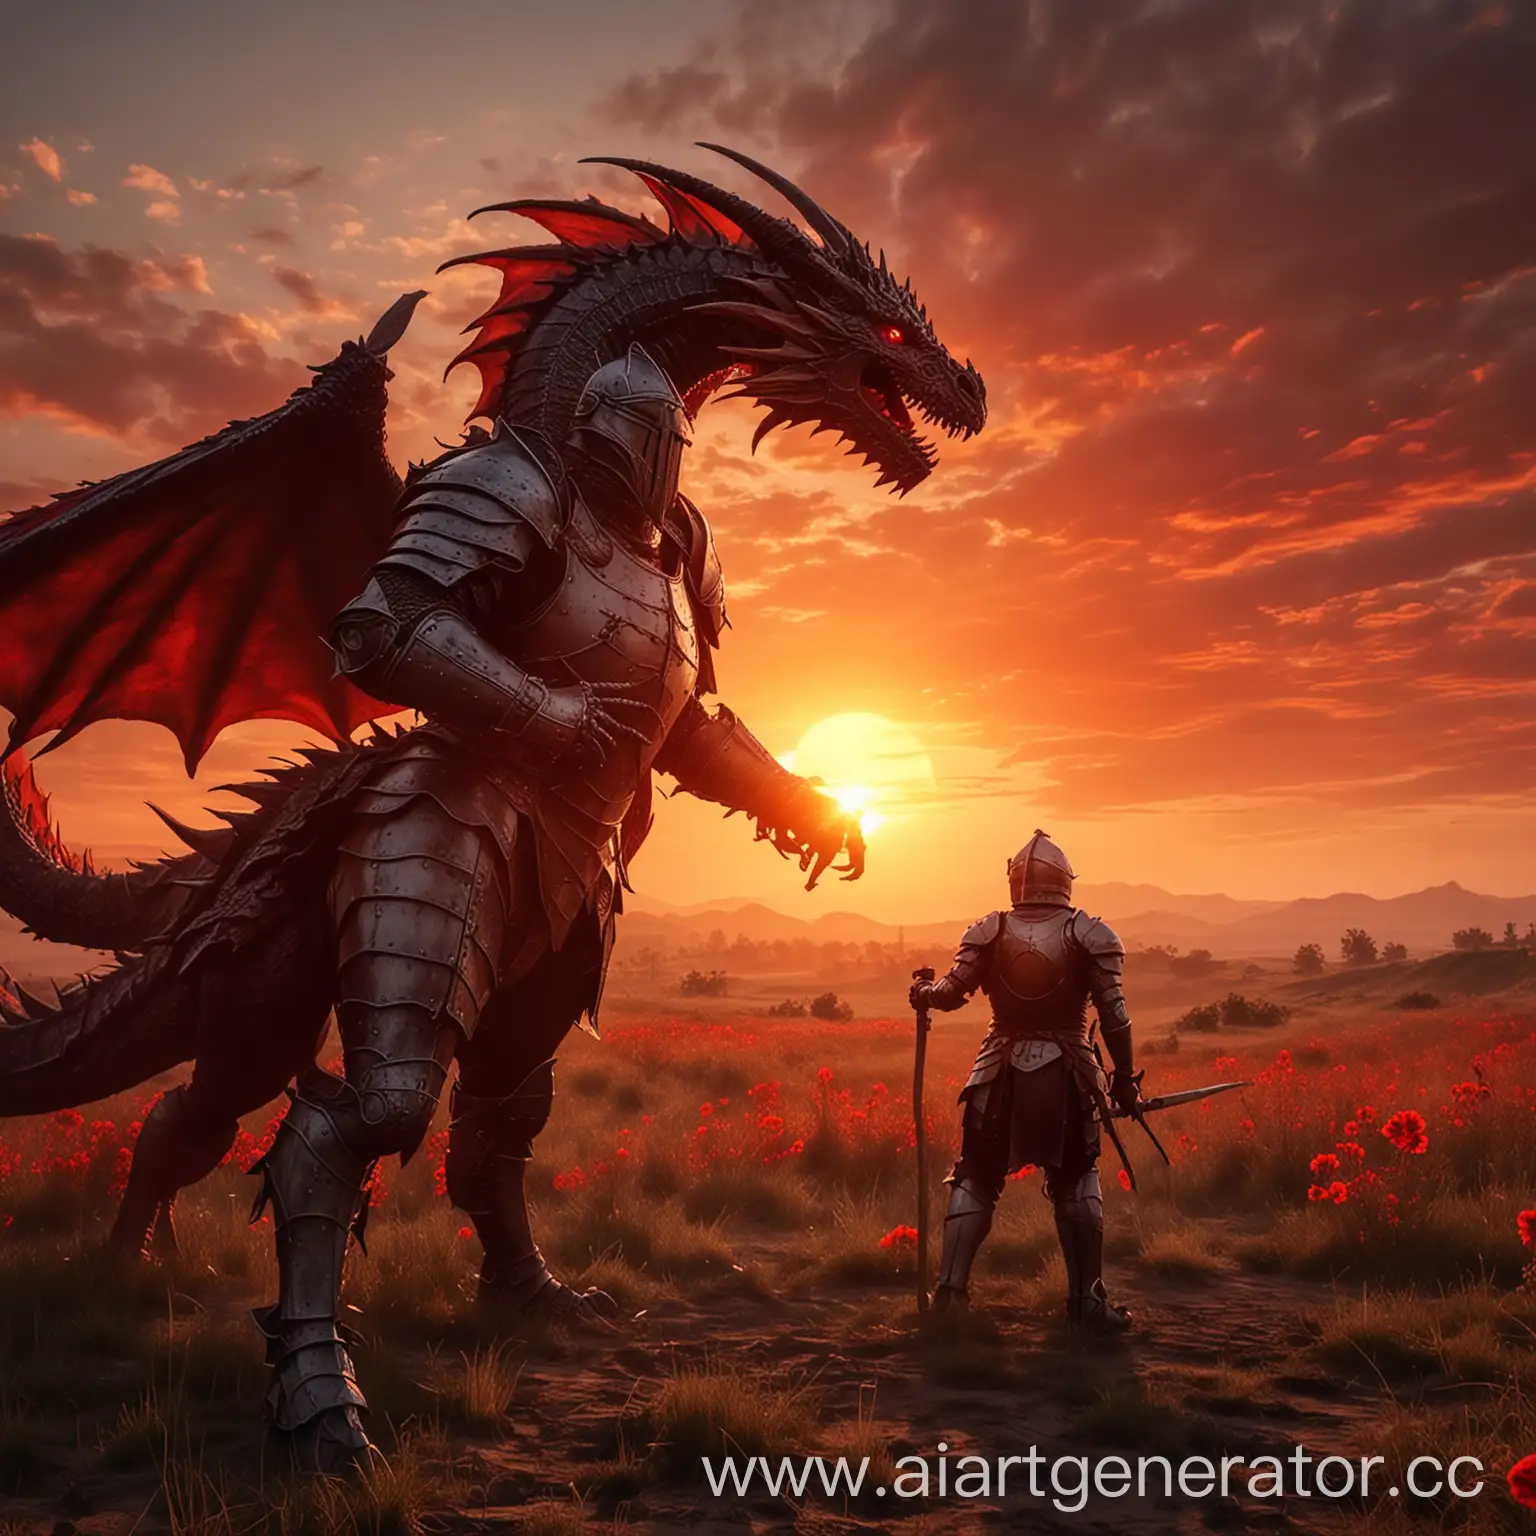 Brave-Knight-Battling-Dragon-in-Fiery-Sunset-Field